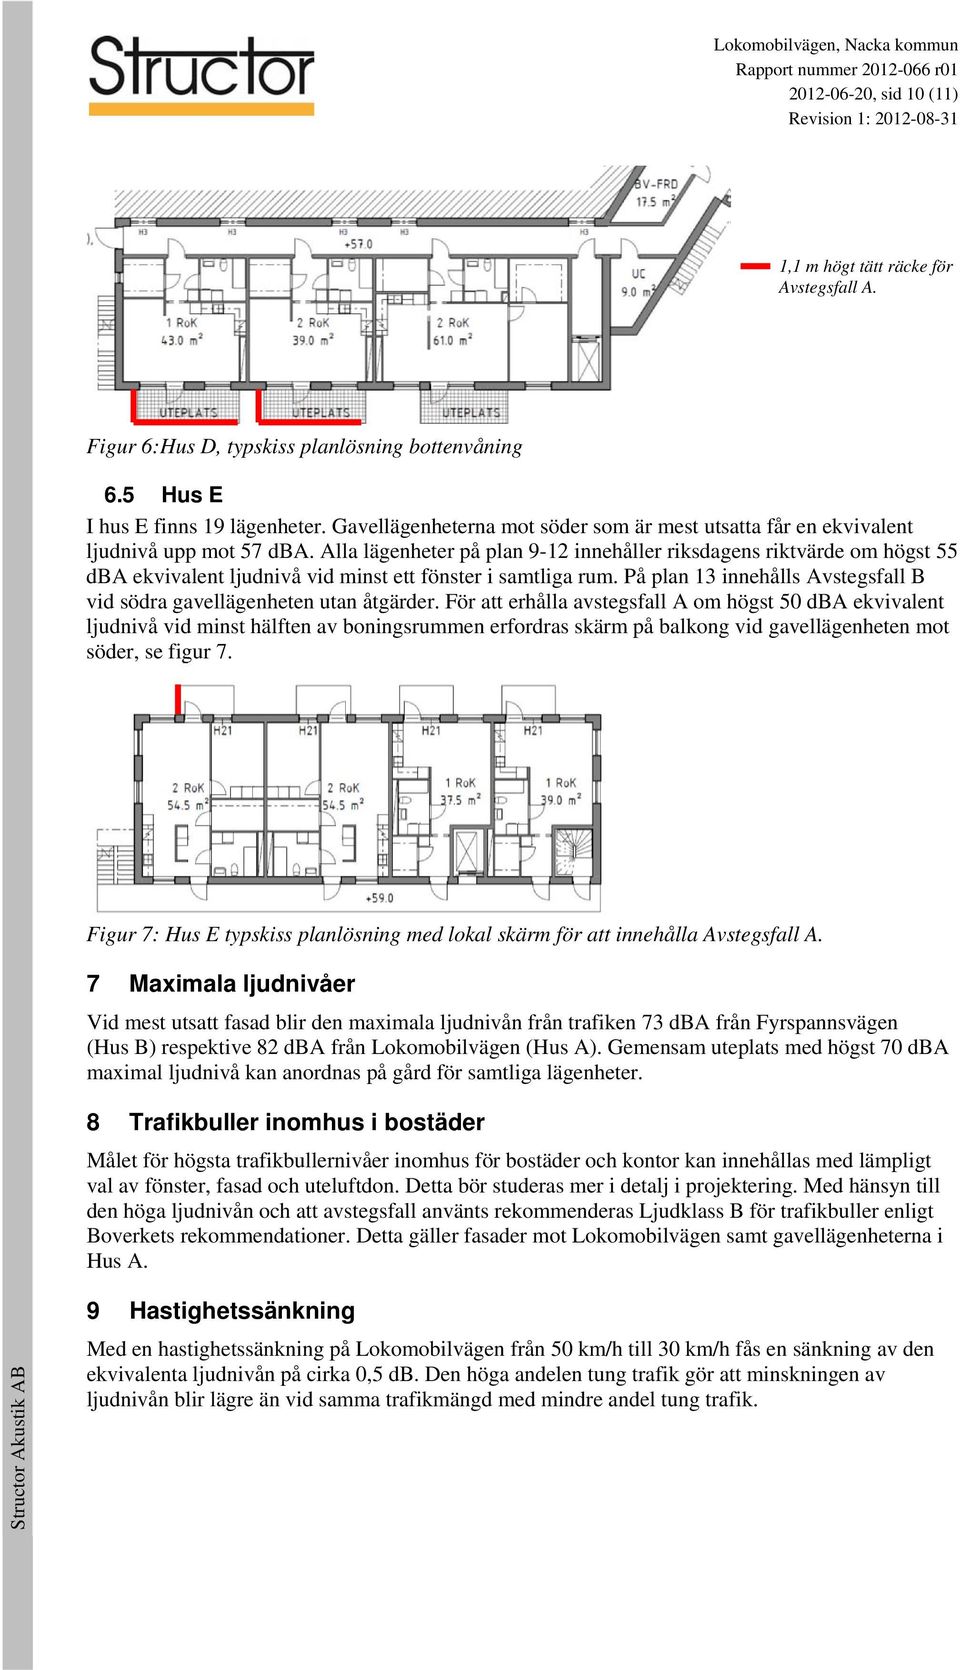 Alla lägenheter på plan 9-12 innehåller riksdagens riktvärde om högst 55 dba ekvivalent ljudnivå vid minst ett fönster i samtliga rum.